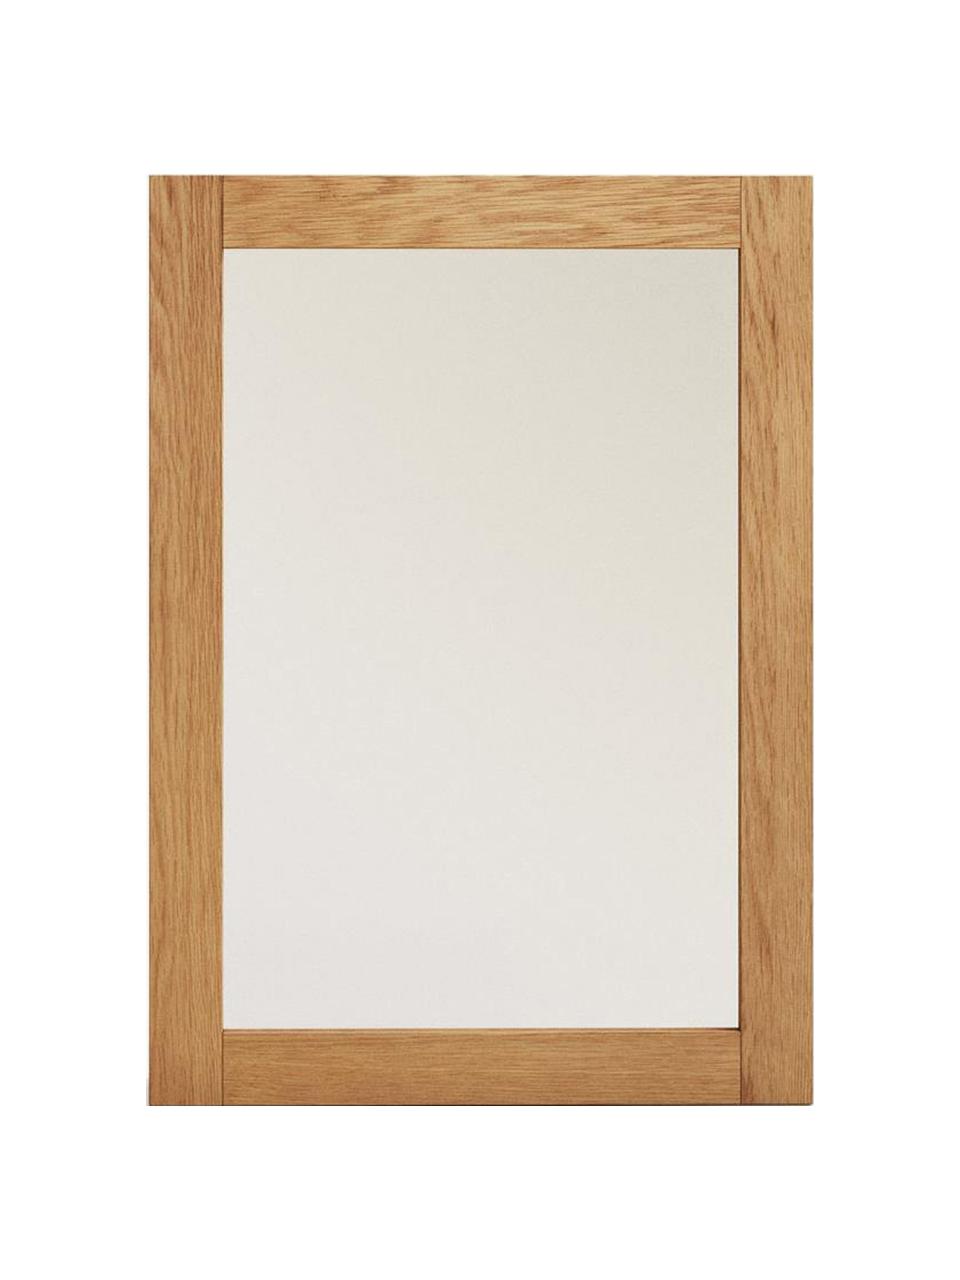 Szafka łazienkowa z lustrem Plubia, Stelaż: drewno tekowe, Drewno tekowe, szkło lustrzane, S 50 x W 70 cm